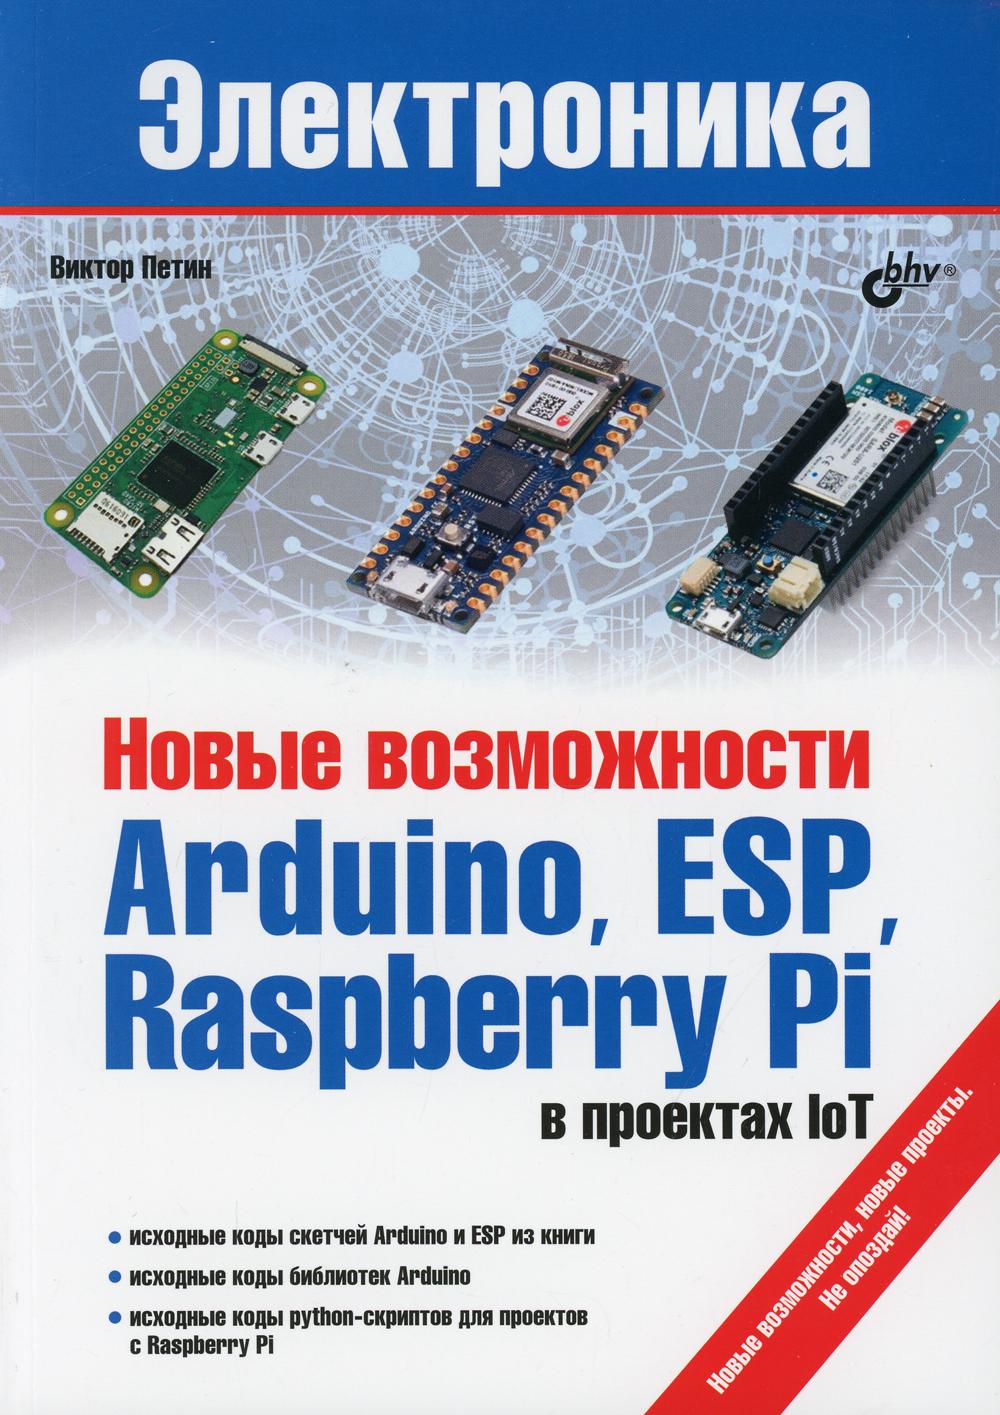 фото Книга новые возможности arduino, esp, raspberry pi в проектах iot bhv(бхв)